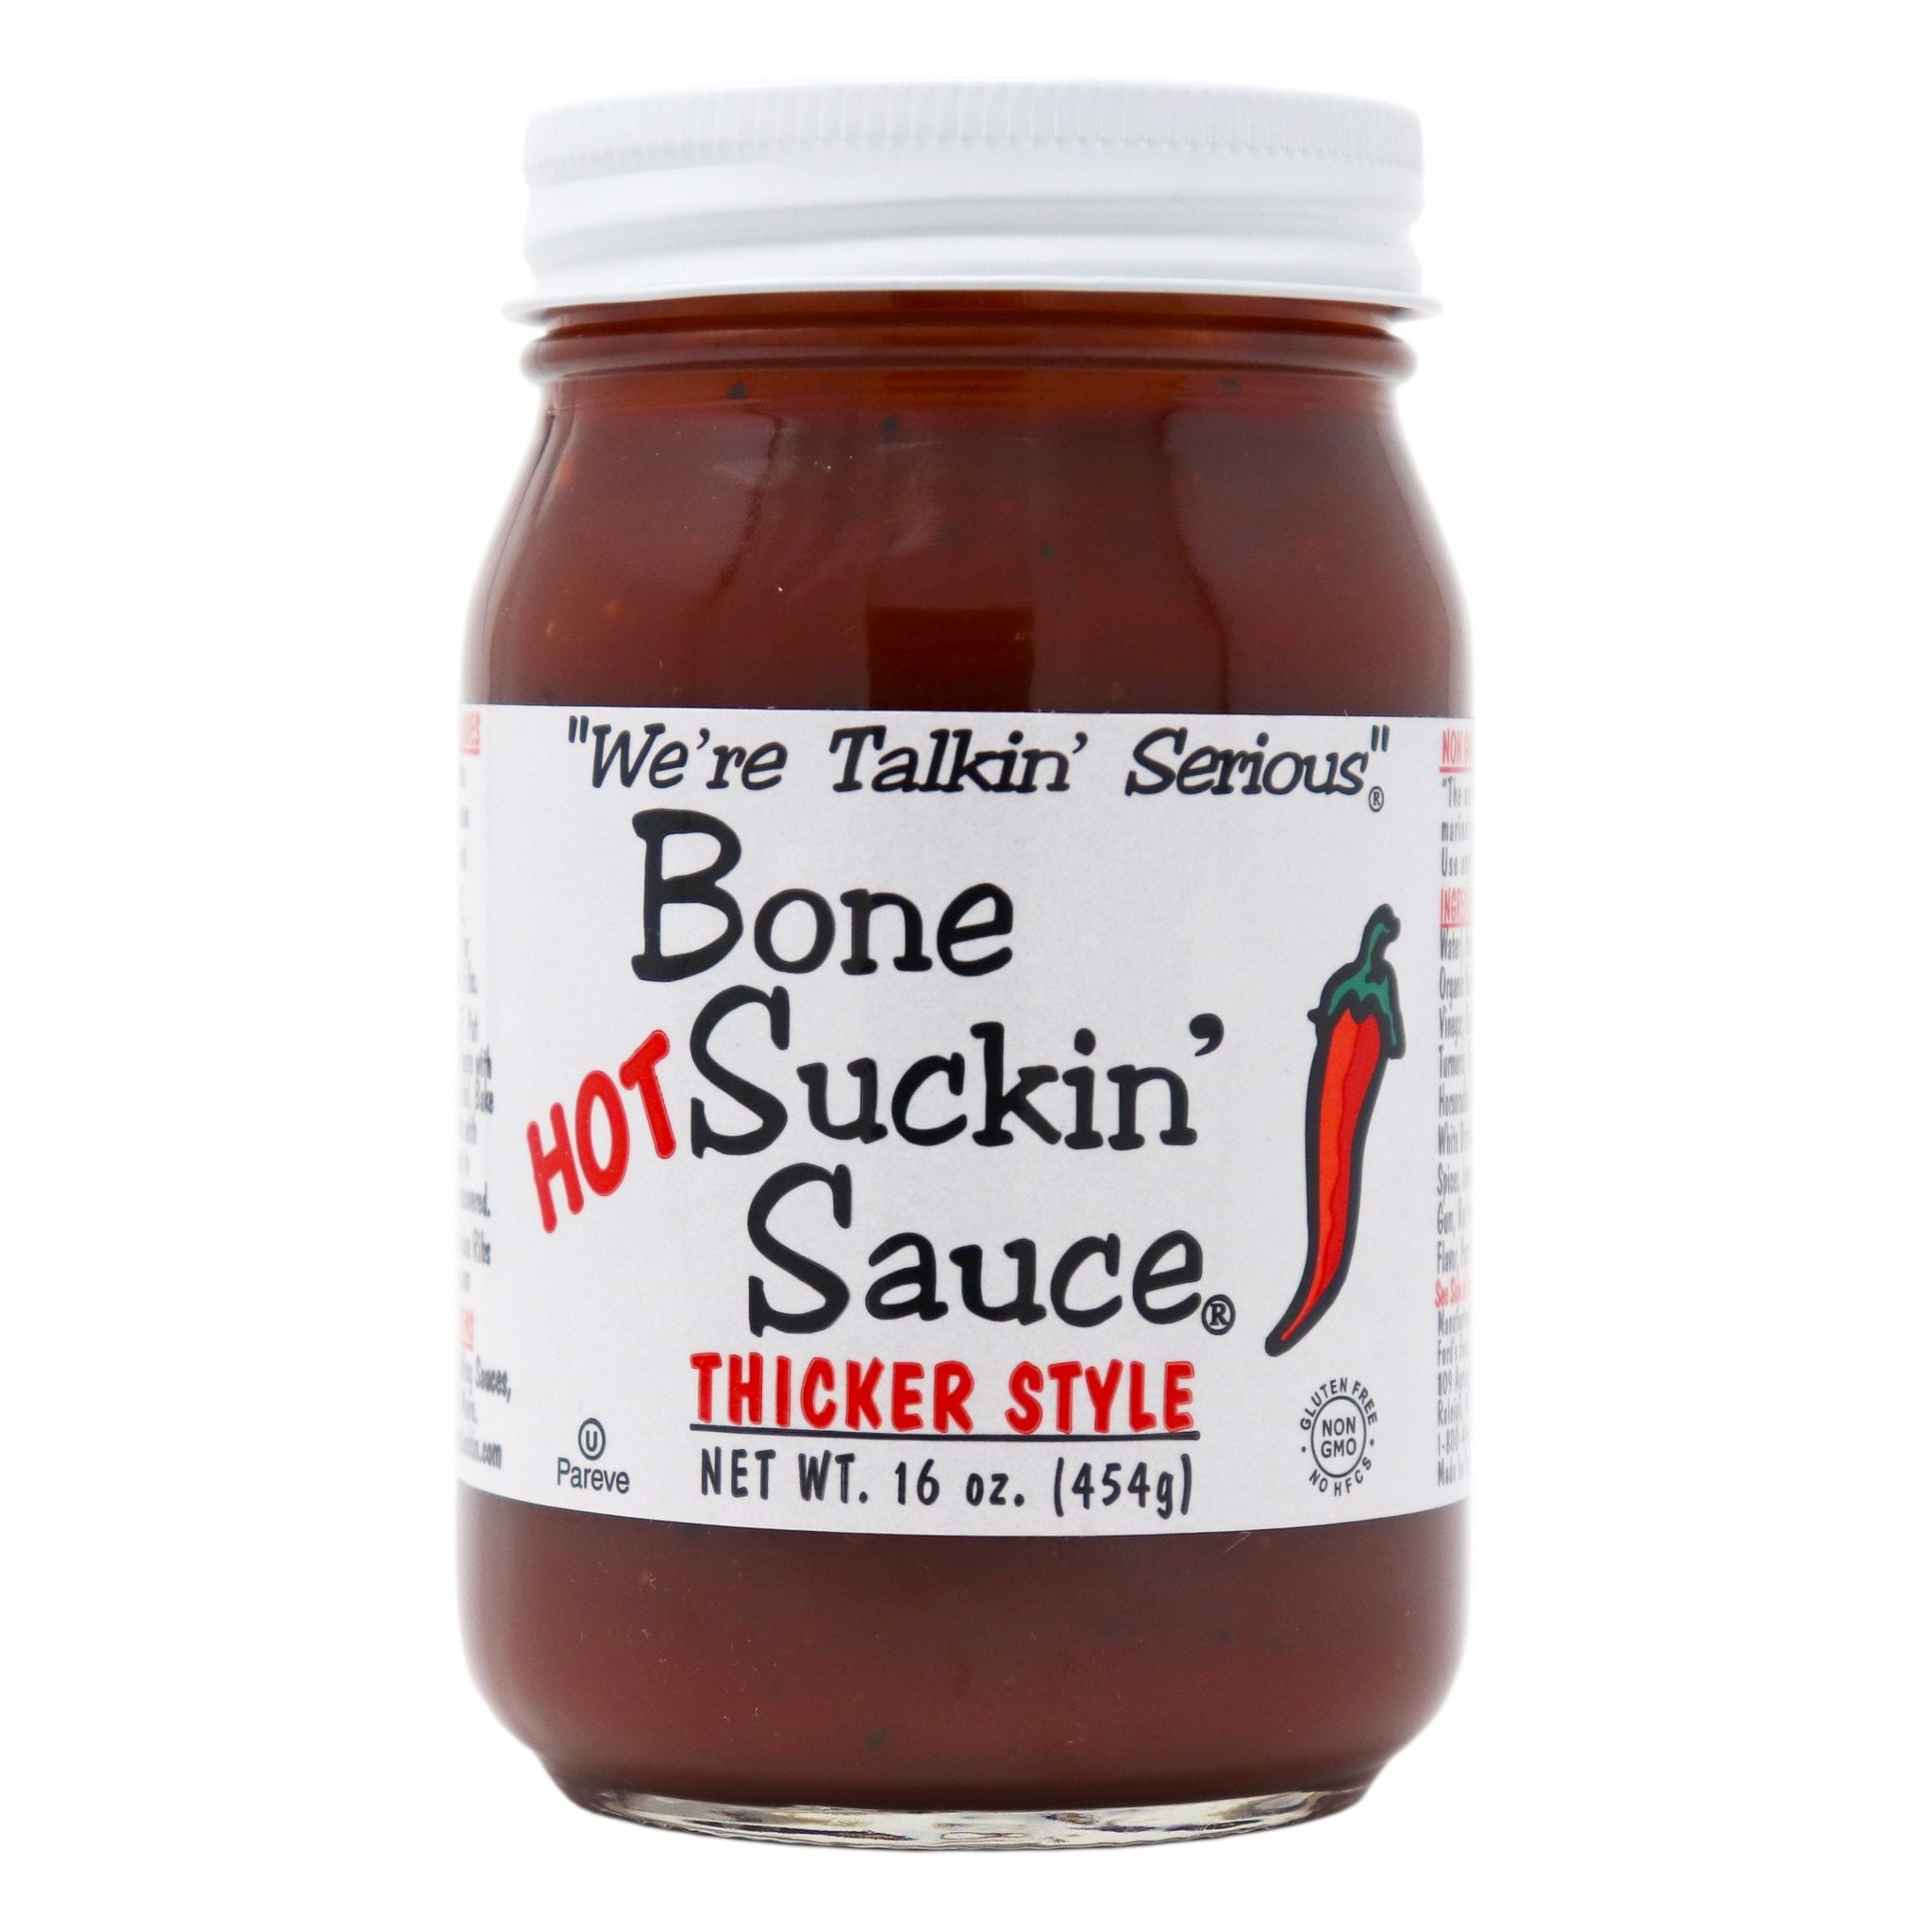 Bone Suckin’ Sauce Thicker Style Hot 16 oz